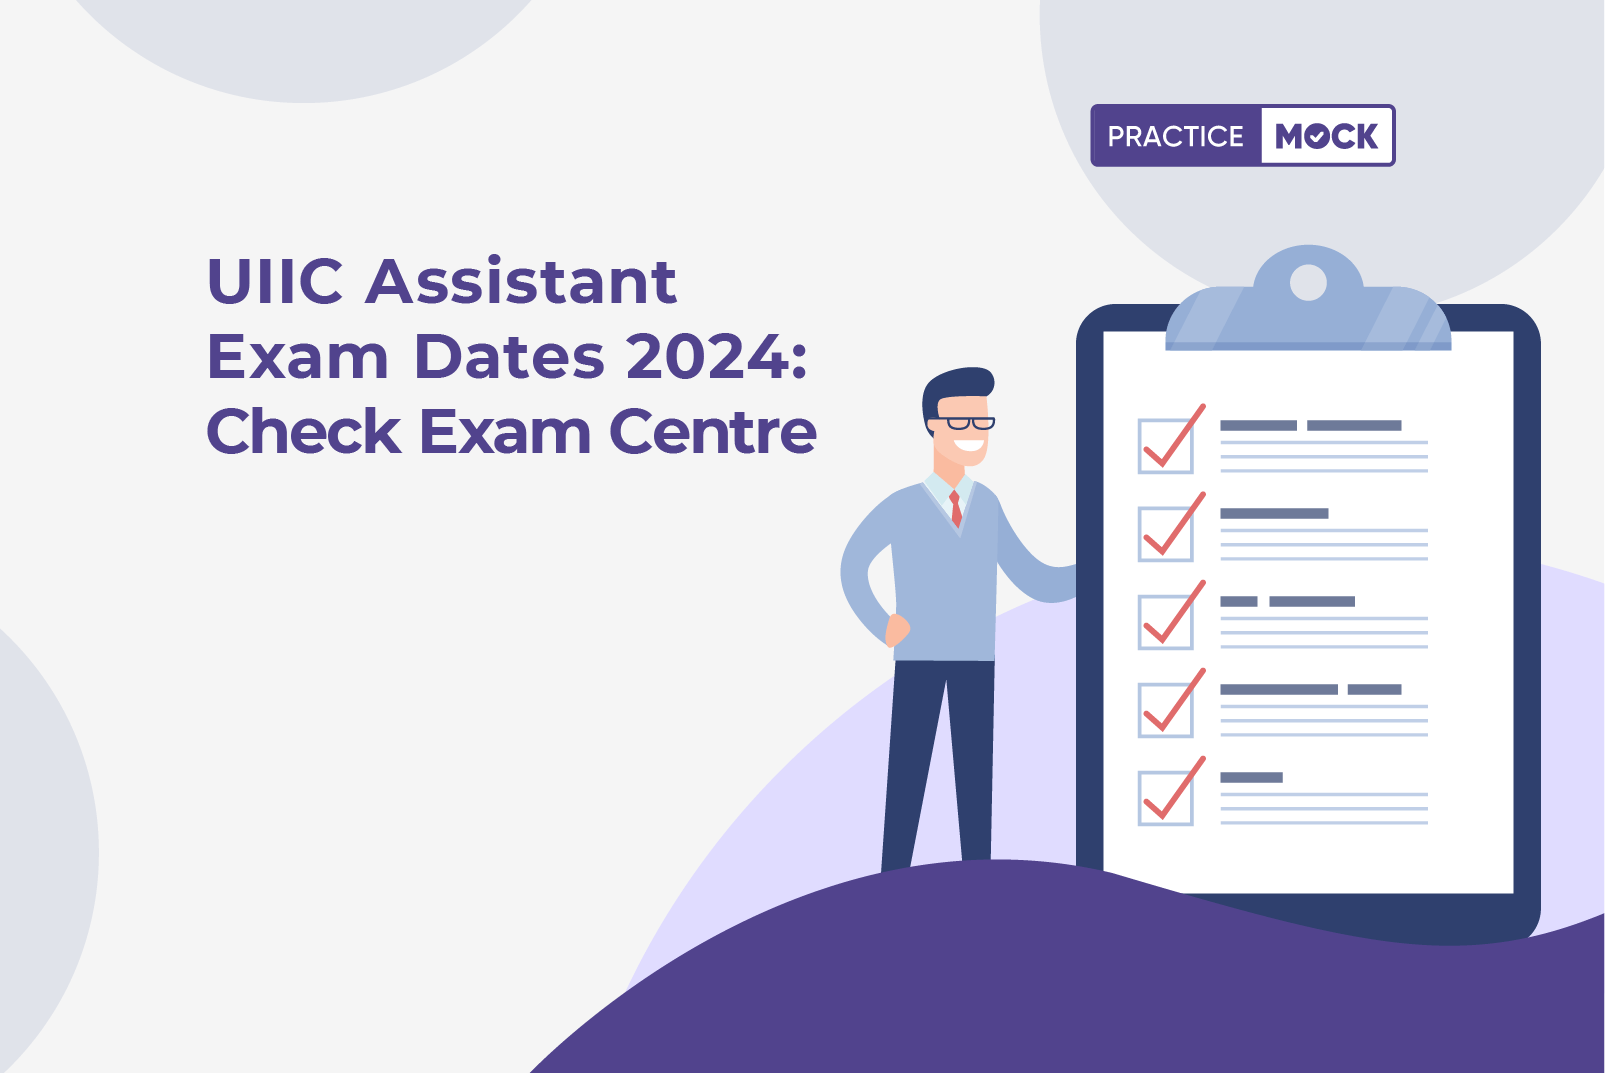 UIIC Assistant Exam Dates 2024